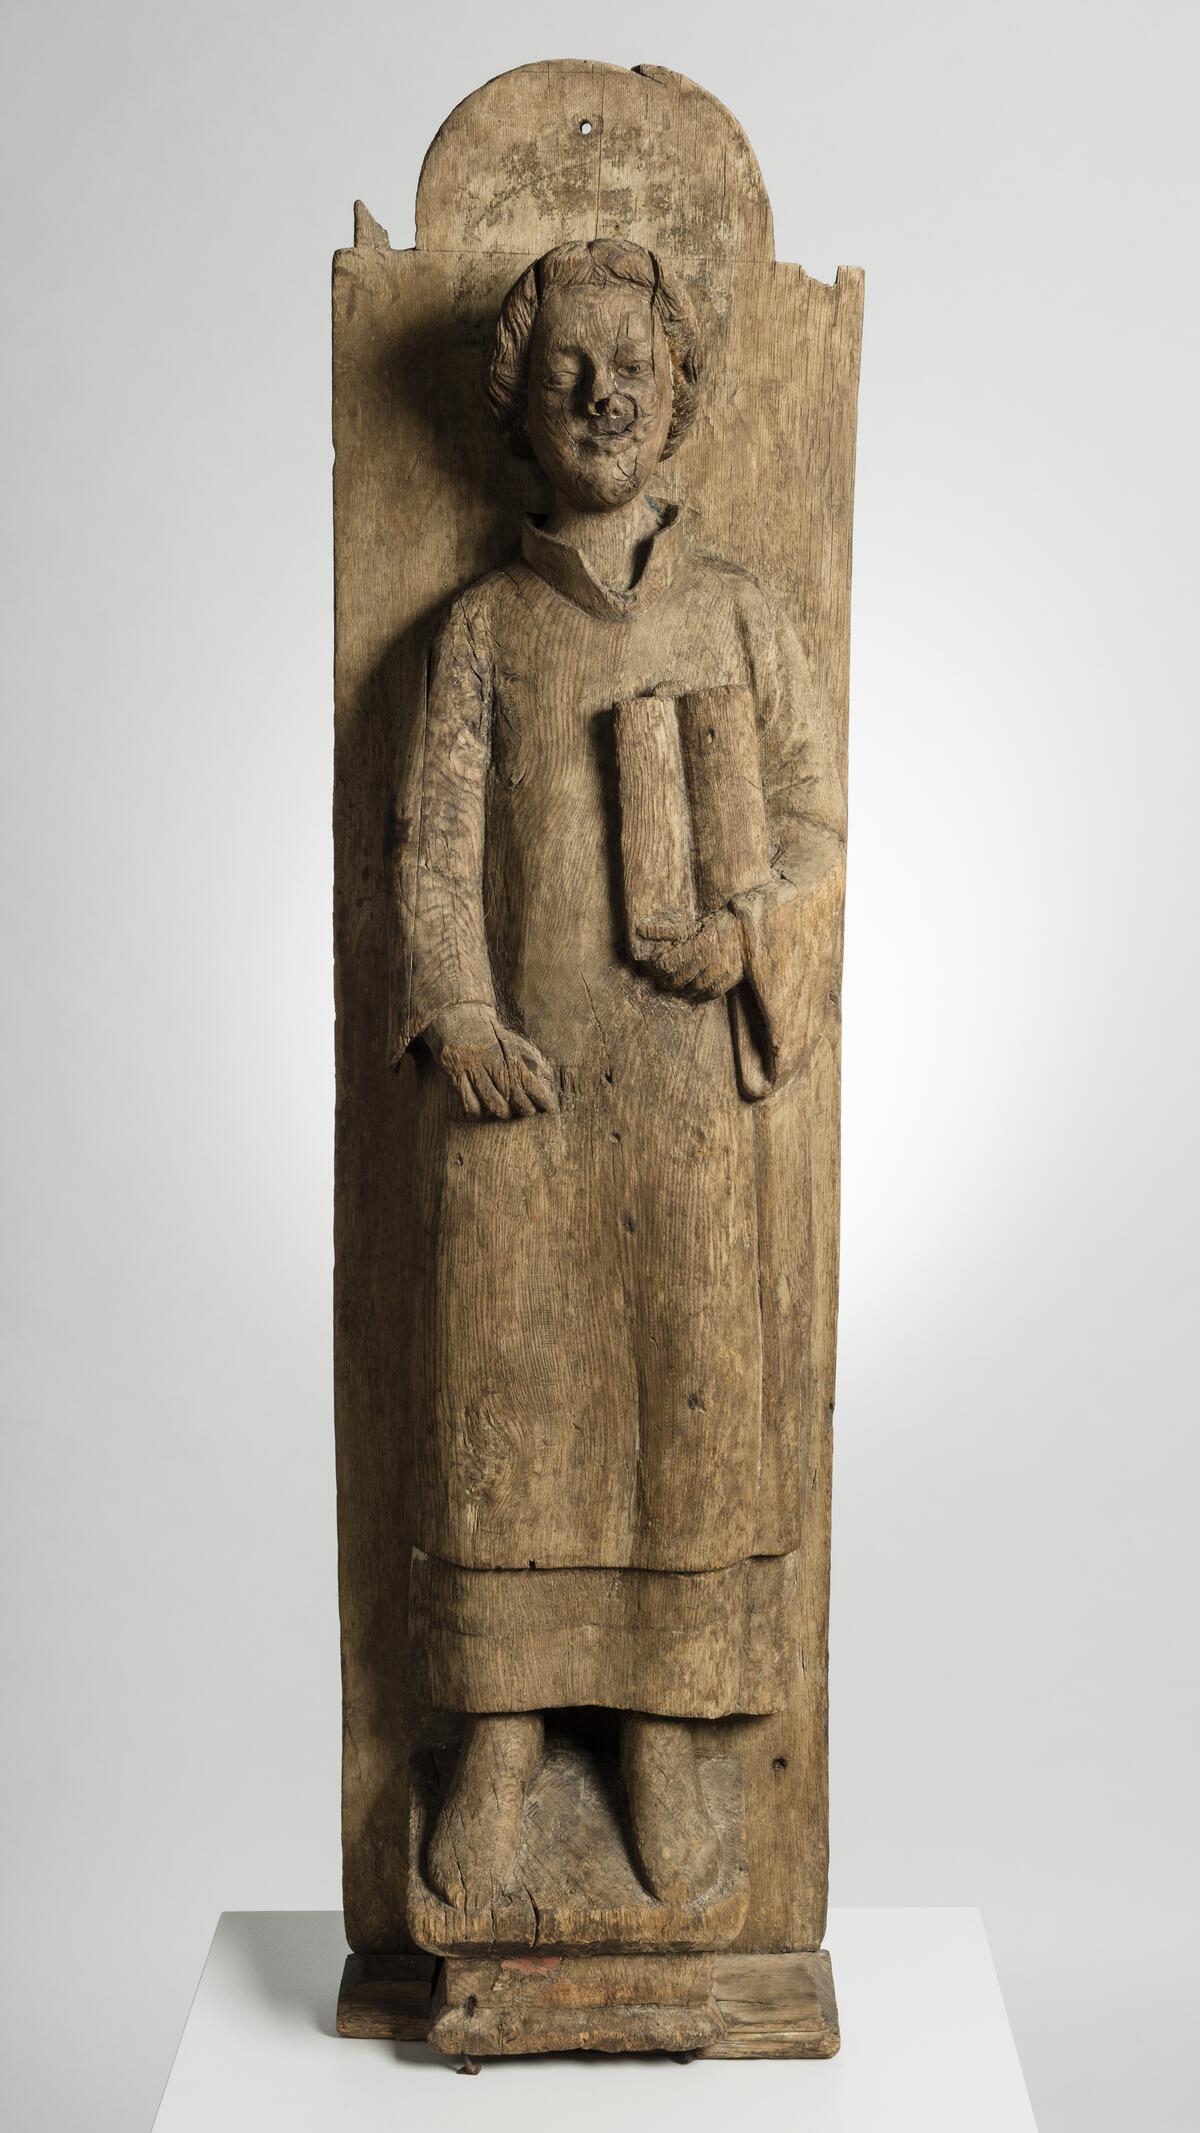 En omålad träskulptur som föreställer Sankt Laurentius. Han håller en öppen bok i ena handen. Skulpturen är fäst vid ett bräde.